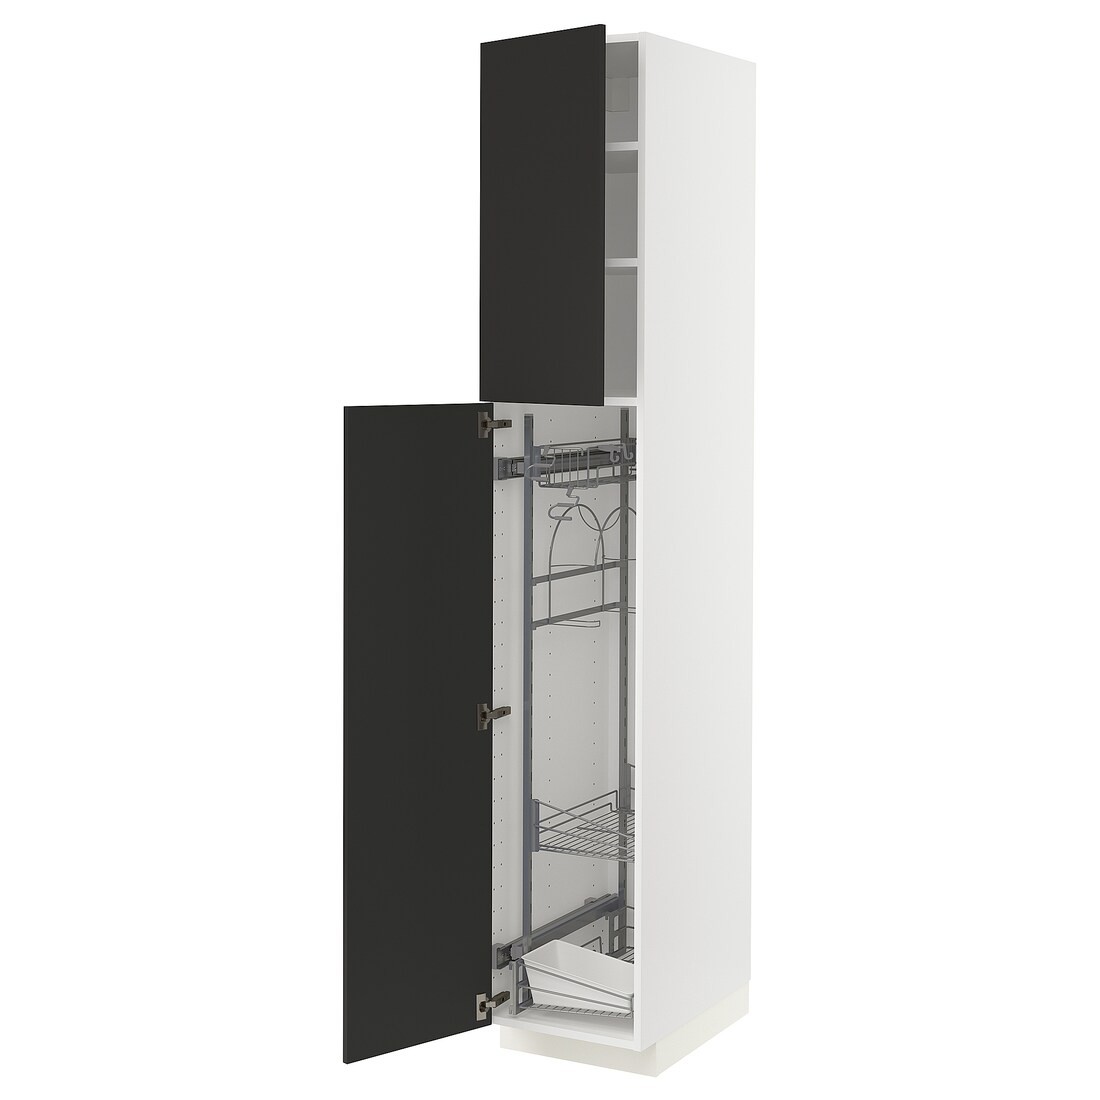 METOD МЕТОД Высокий шкаф с отделением для аксессуаров для уборки, белый / Nickebo матовый антрацит, 40x60x220 см